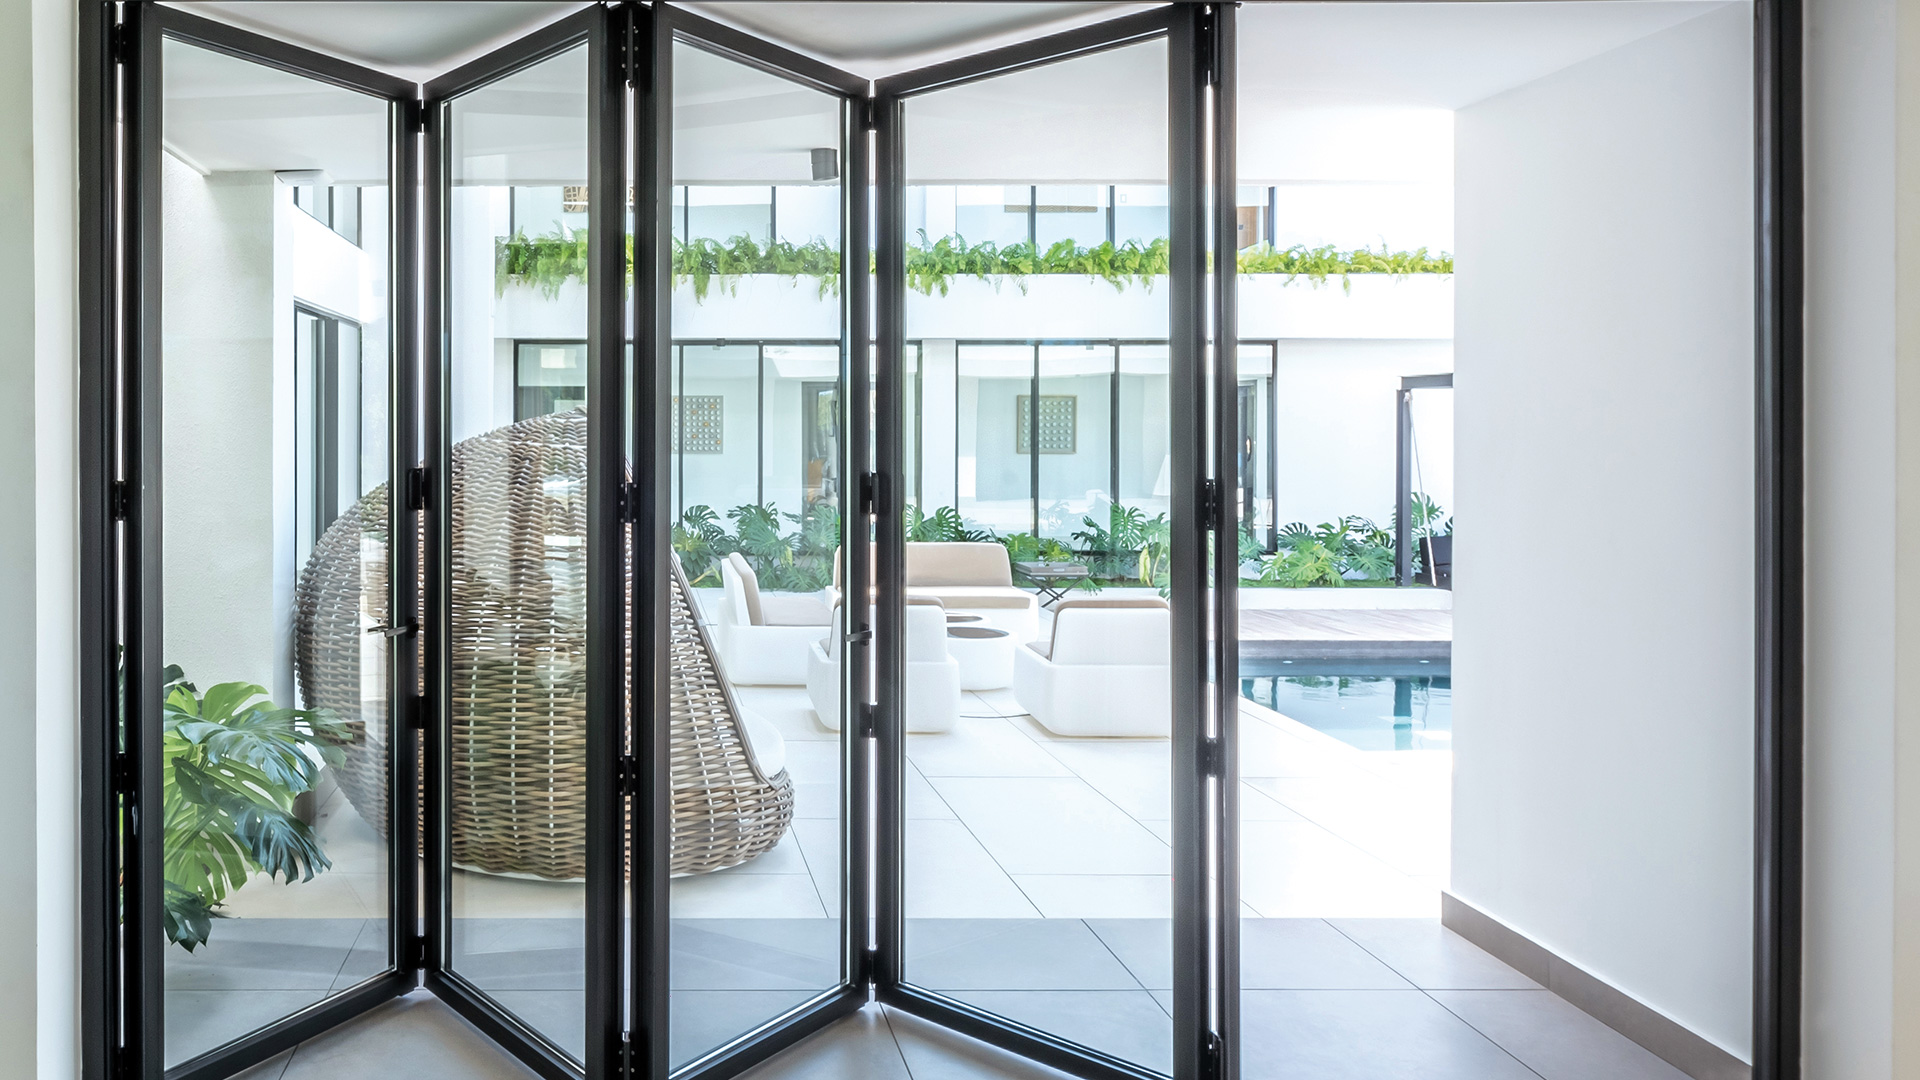 Are bifolding doors energy efficient?